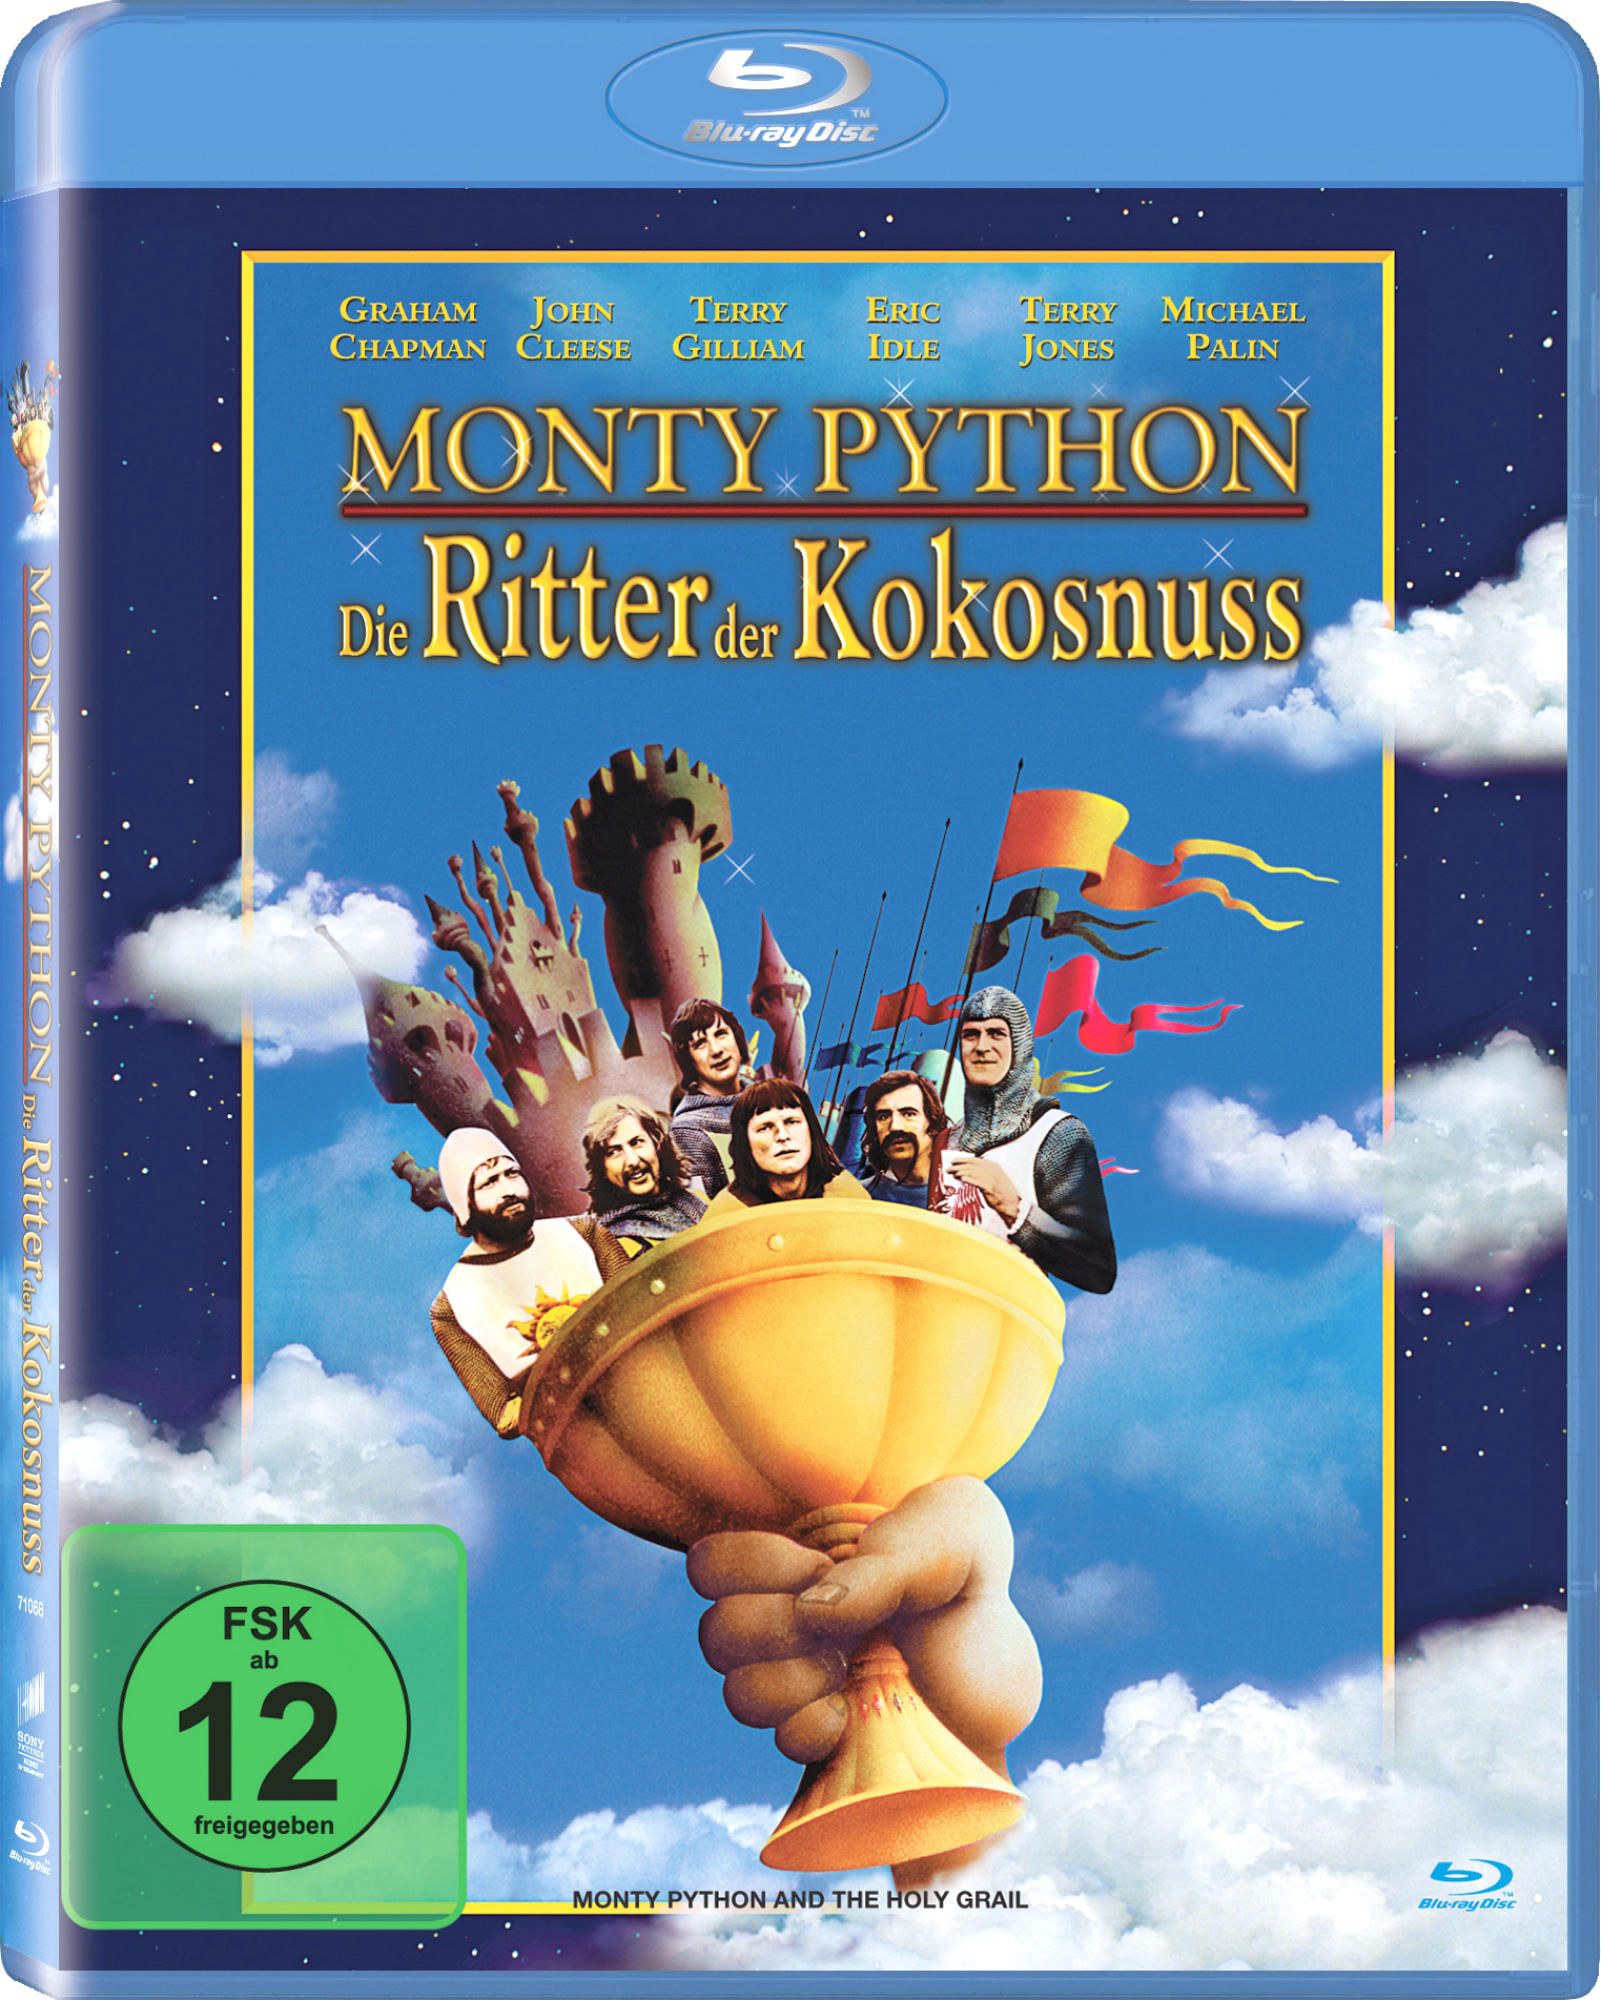 Blu-ray der Ritter Kokosnuss Die